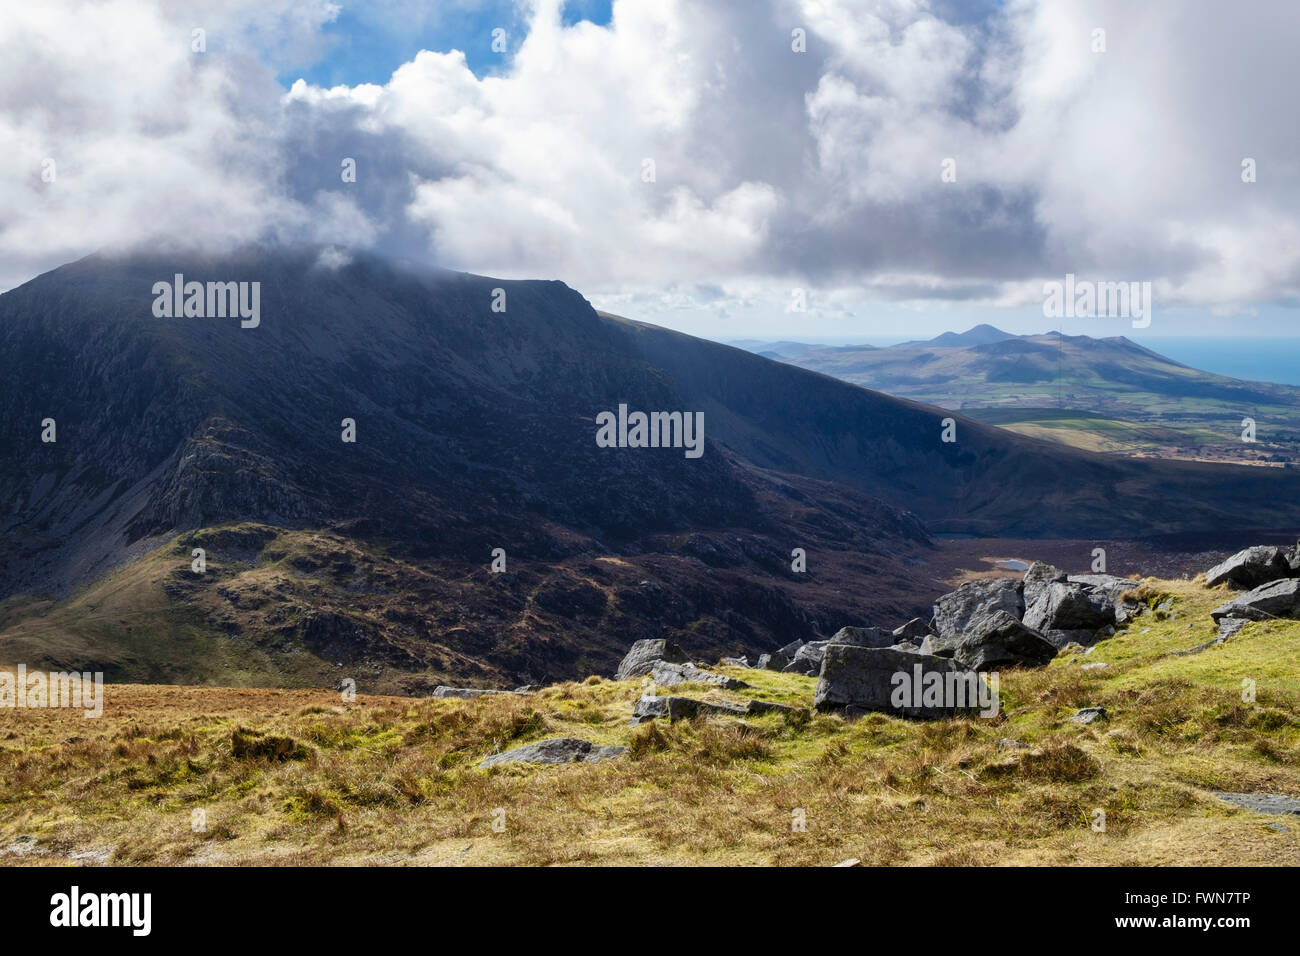 View to Craig Cwm Silyn from Mynydd Tal-y-mignedd on Nantlle Ridge in mountains of Snowdonia National Park. Gwynedd, Wales, UK Stock Photo